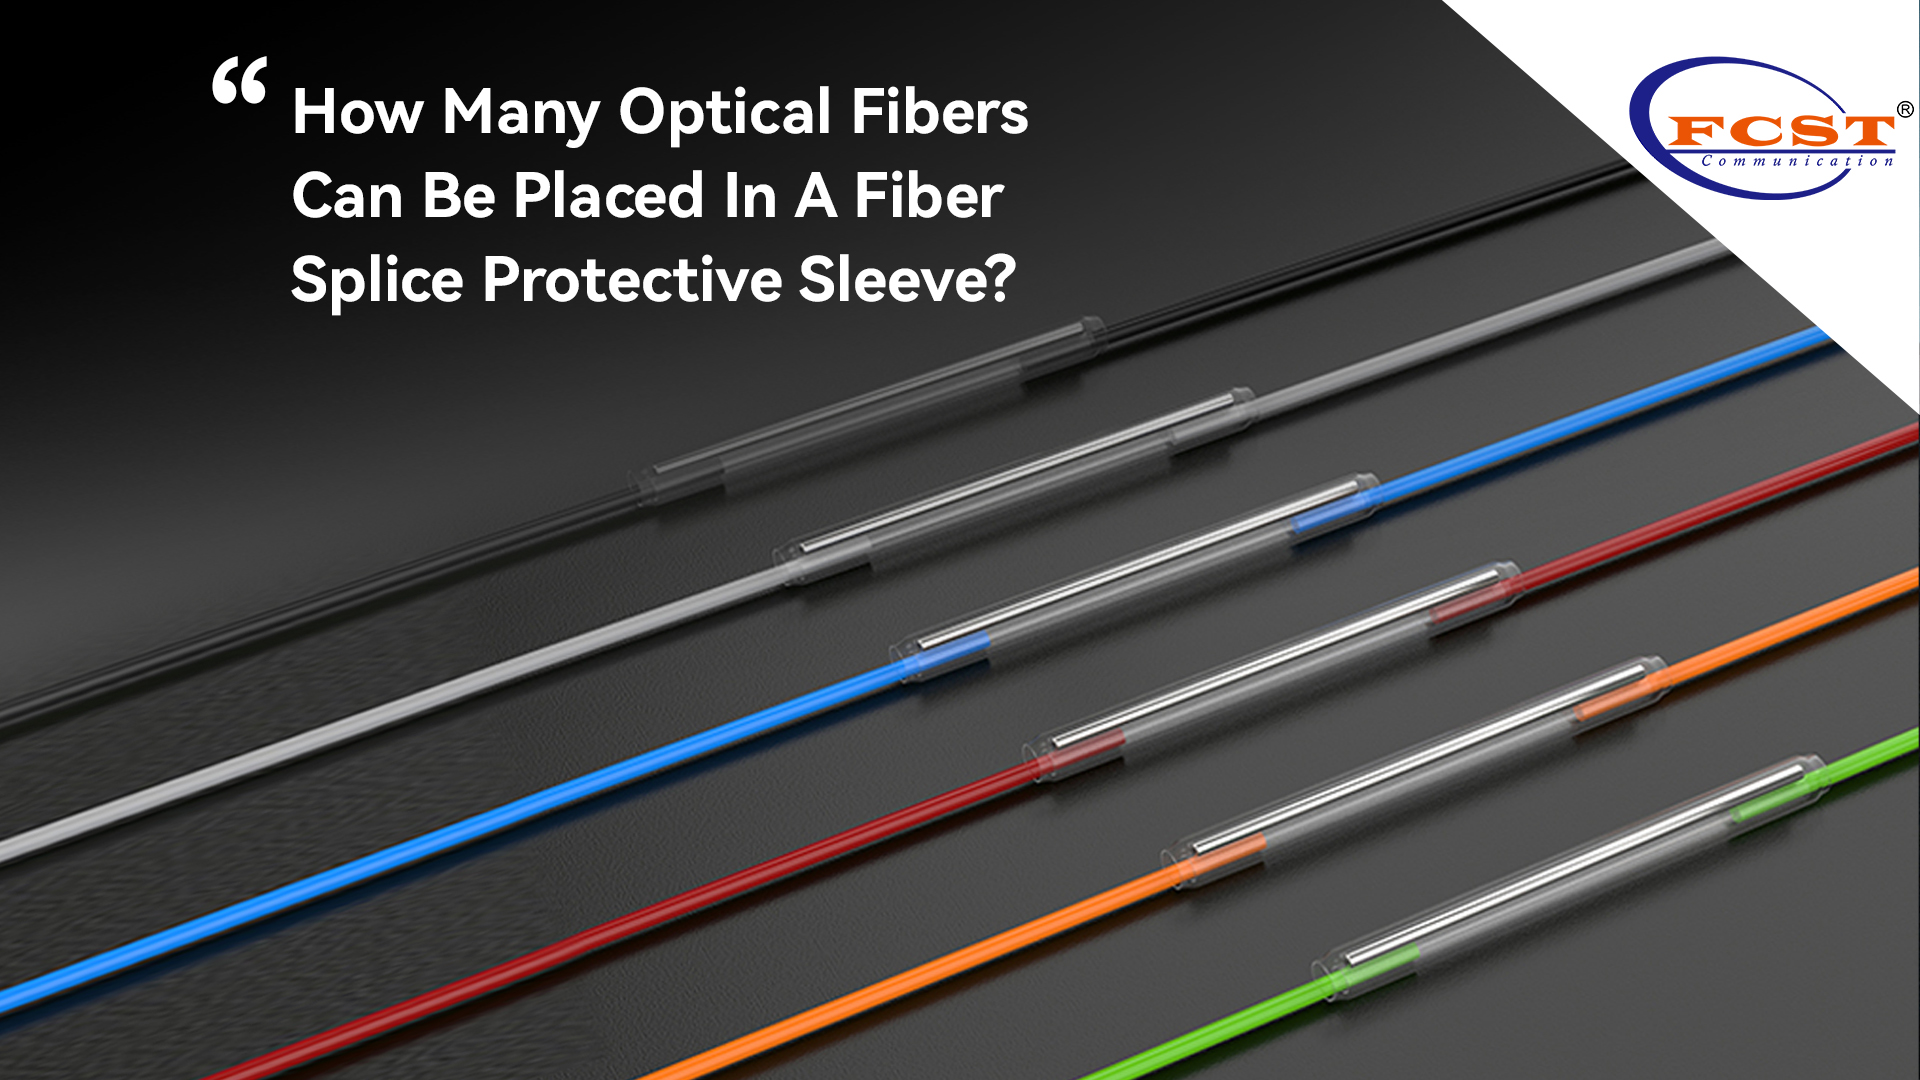 Quantas fibras ópticas podem ser colocadas em uma manga protetora de fibra em emenda?